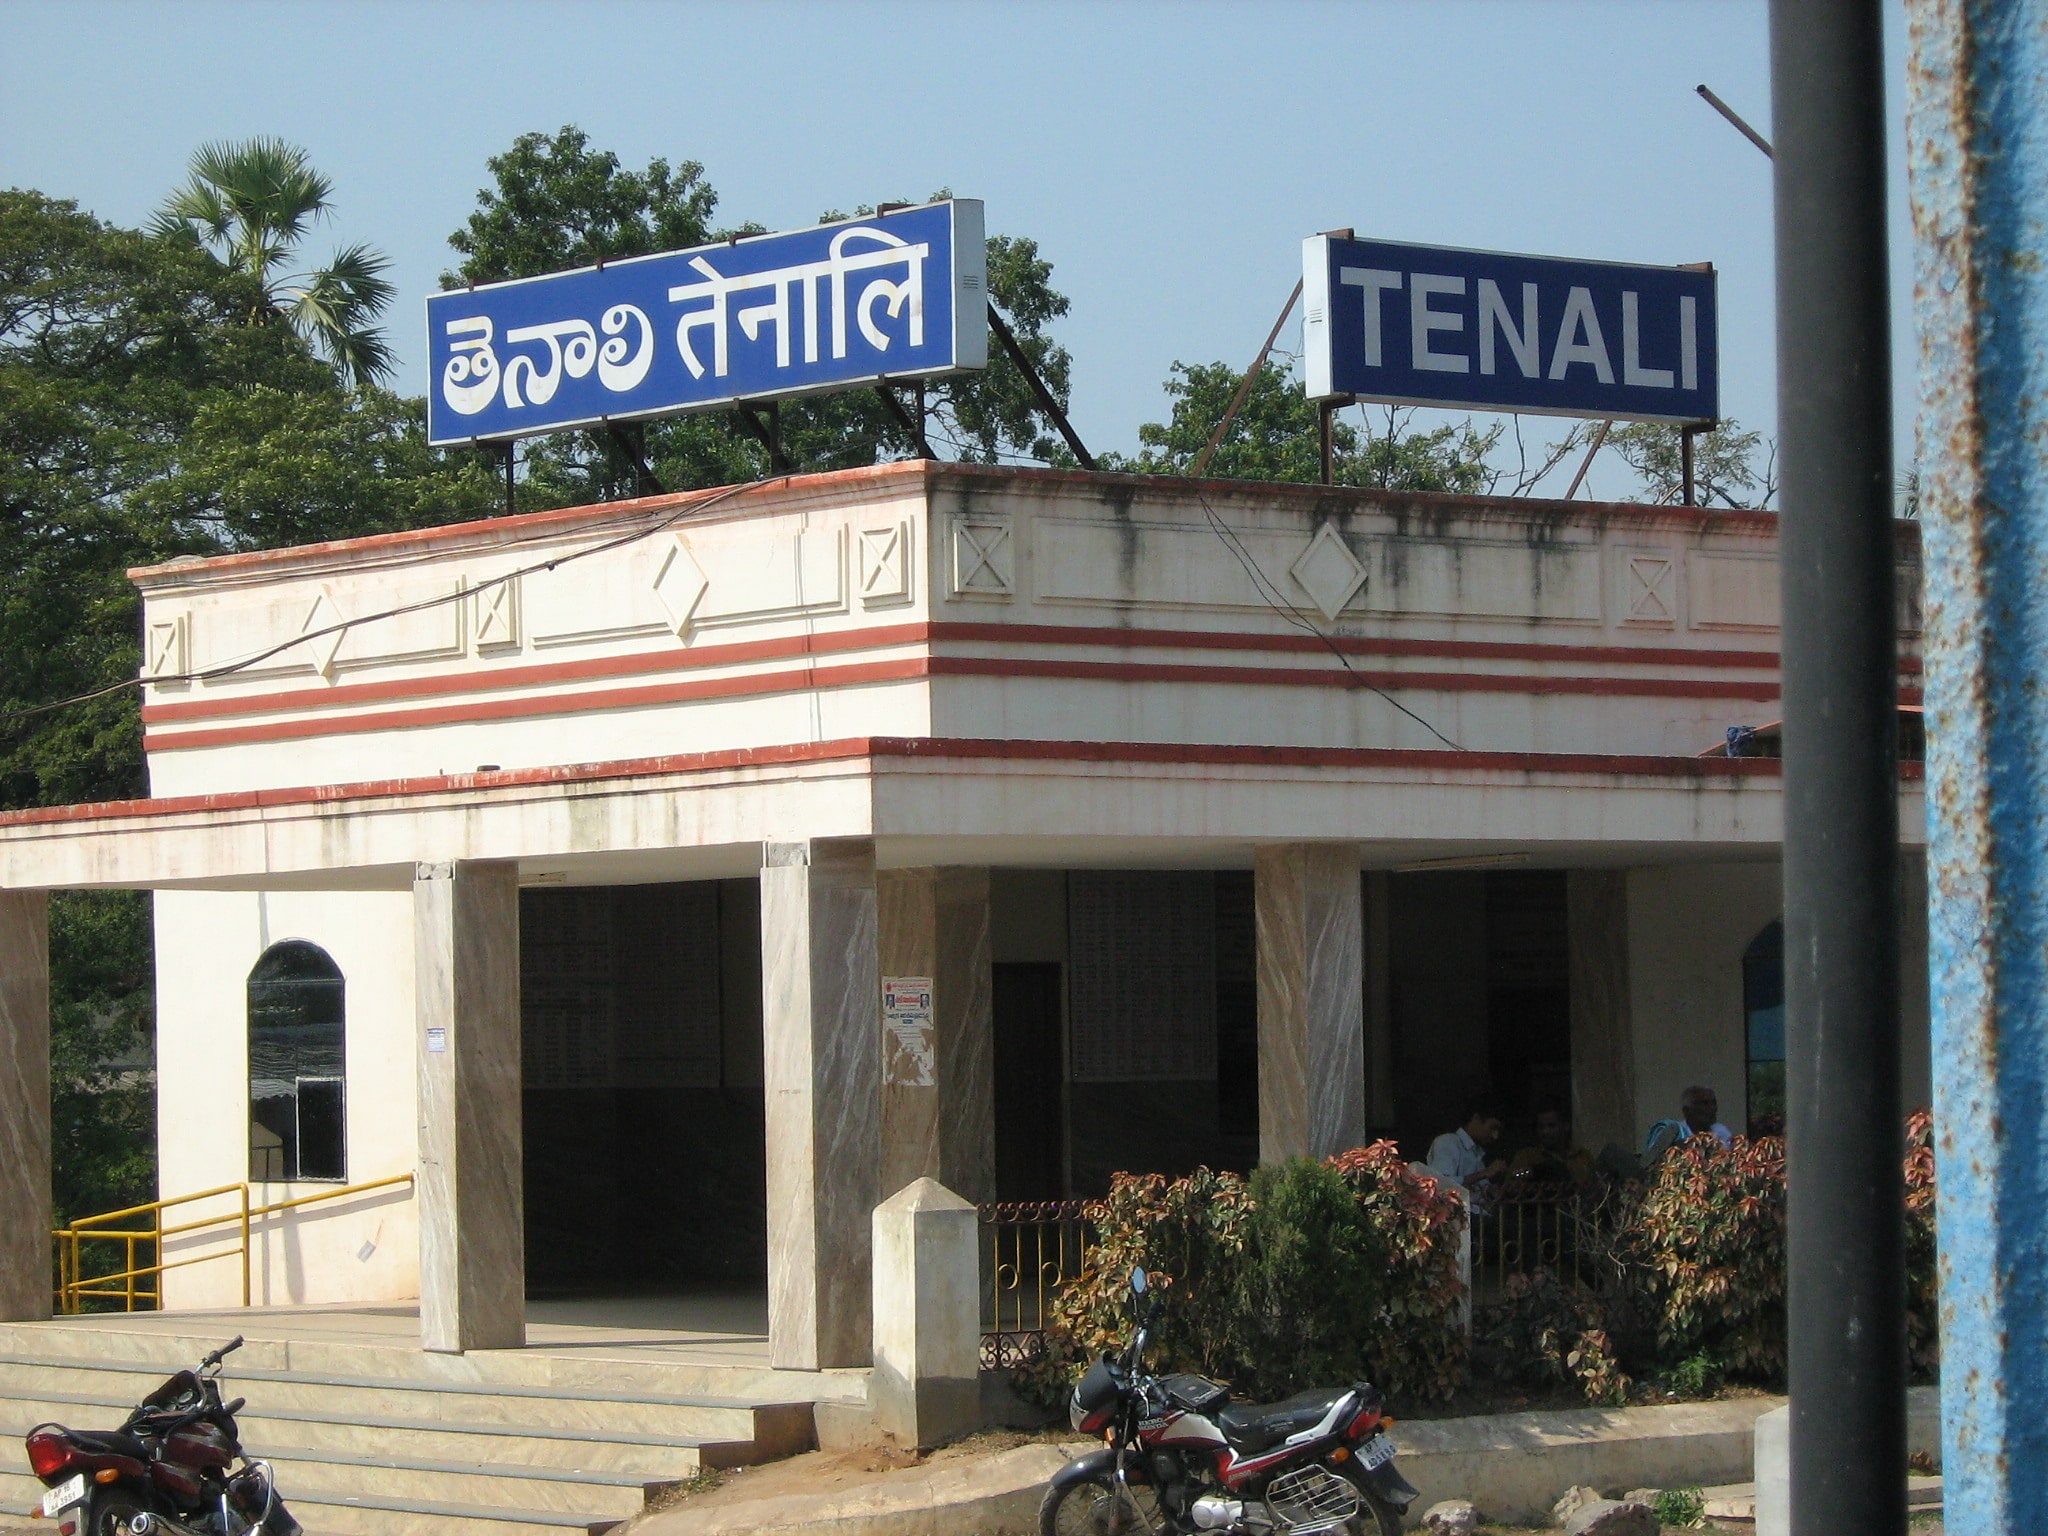 Tenali, India